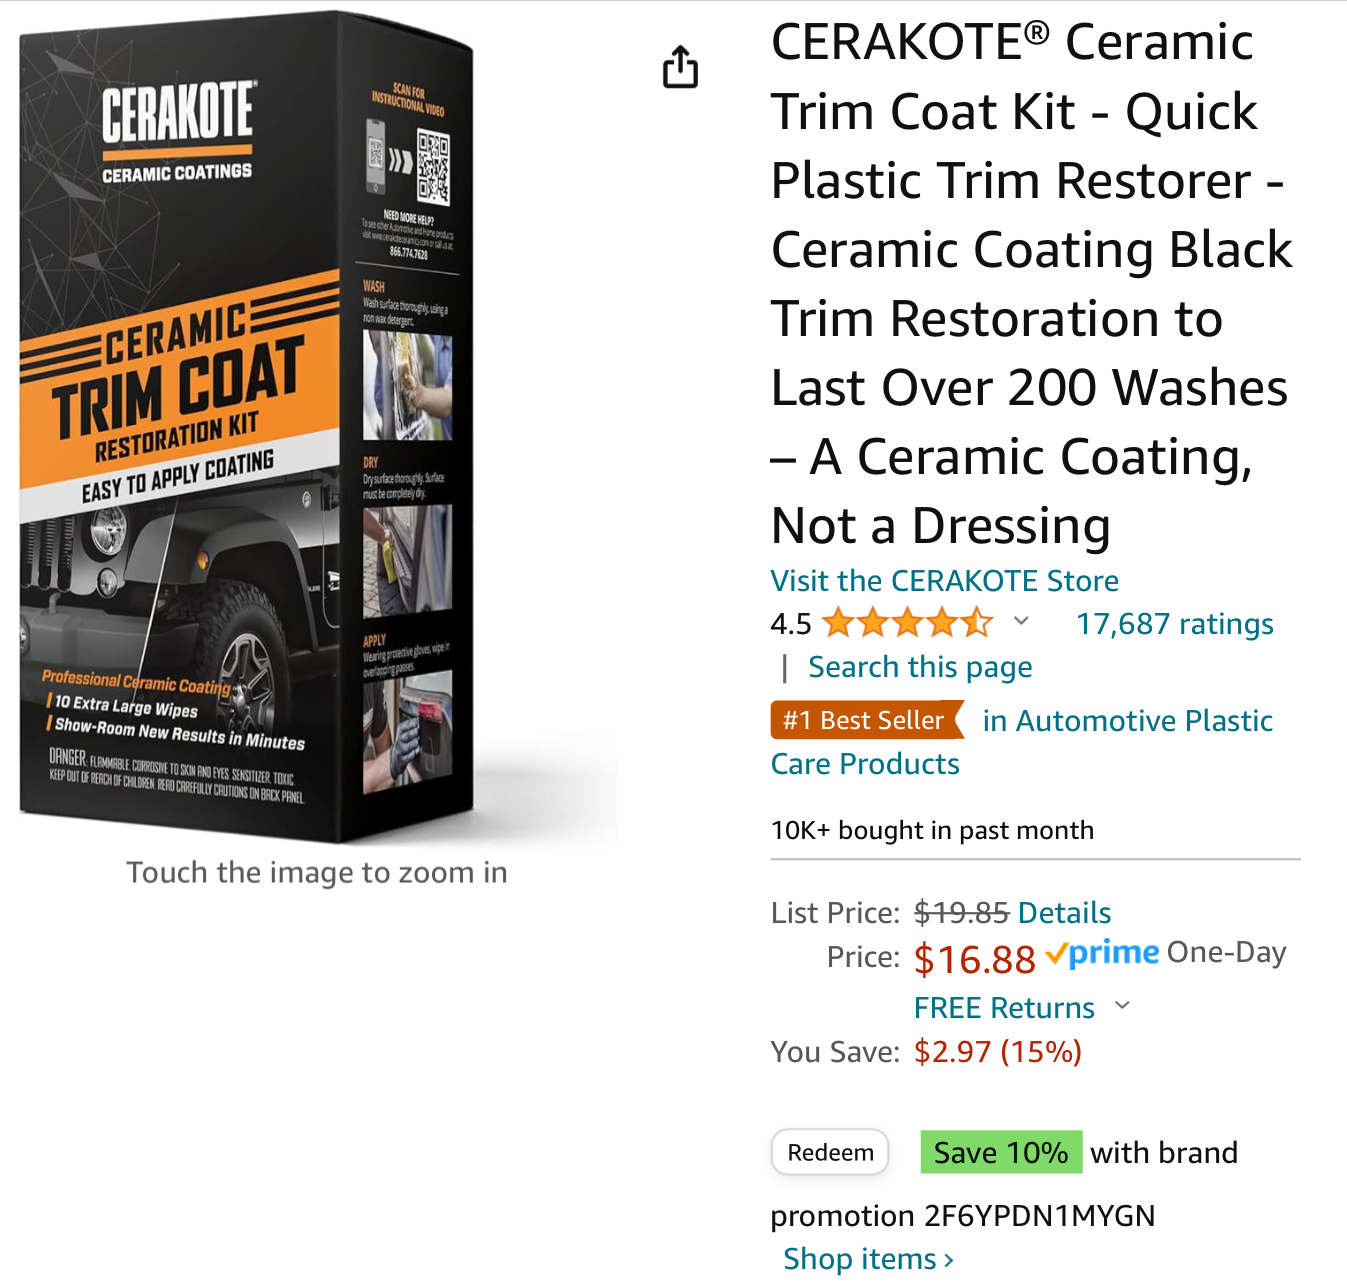 CERAKOTE Ceramic Trim Coat Kit - Quick Plastic Trim Restorer $13.50